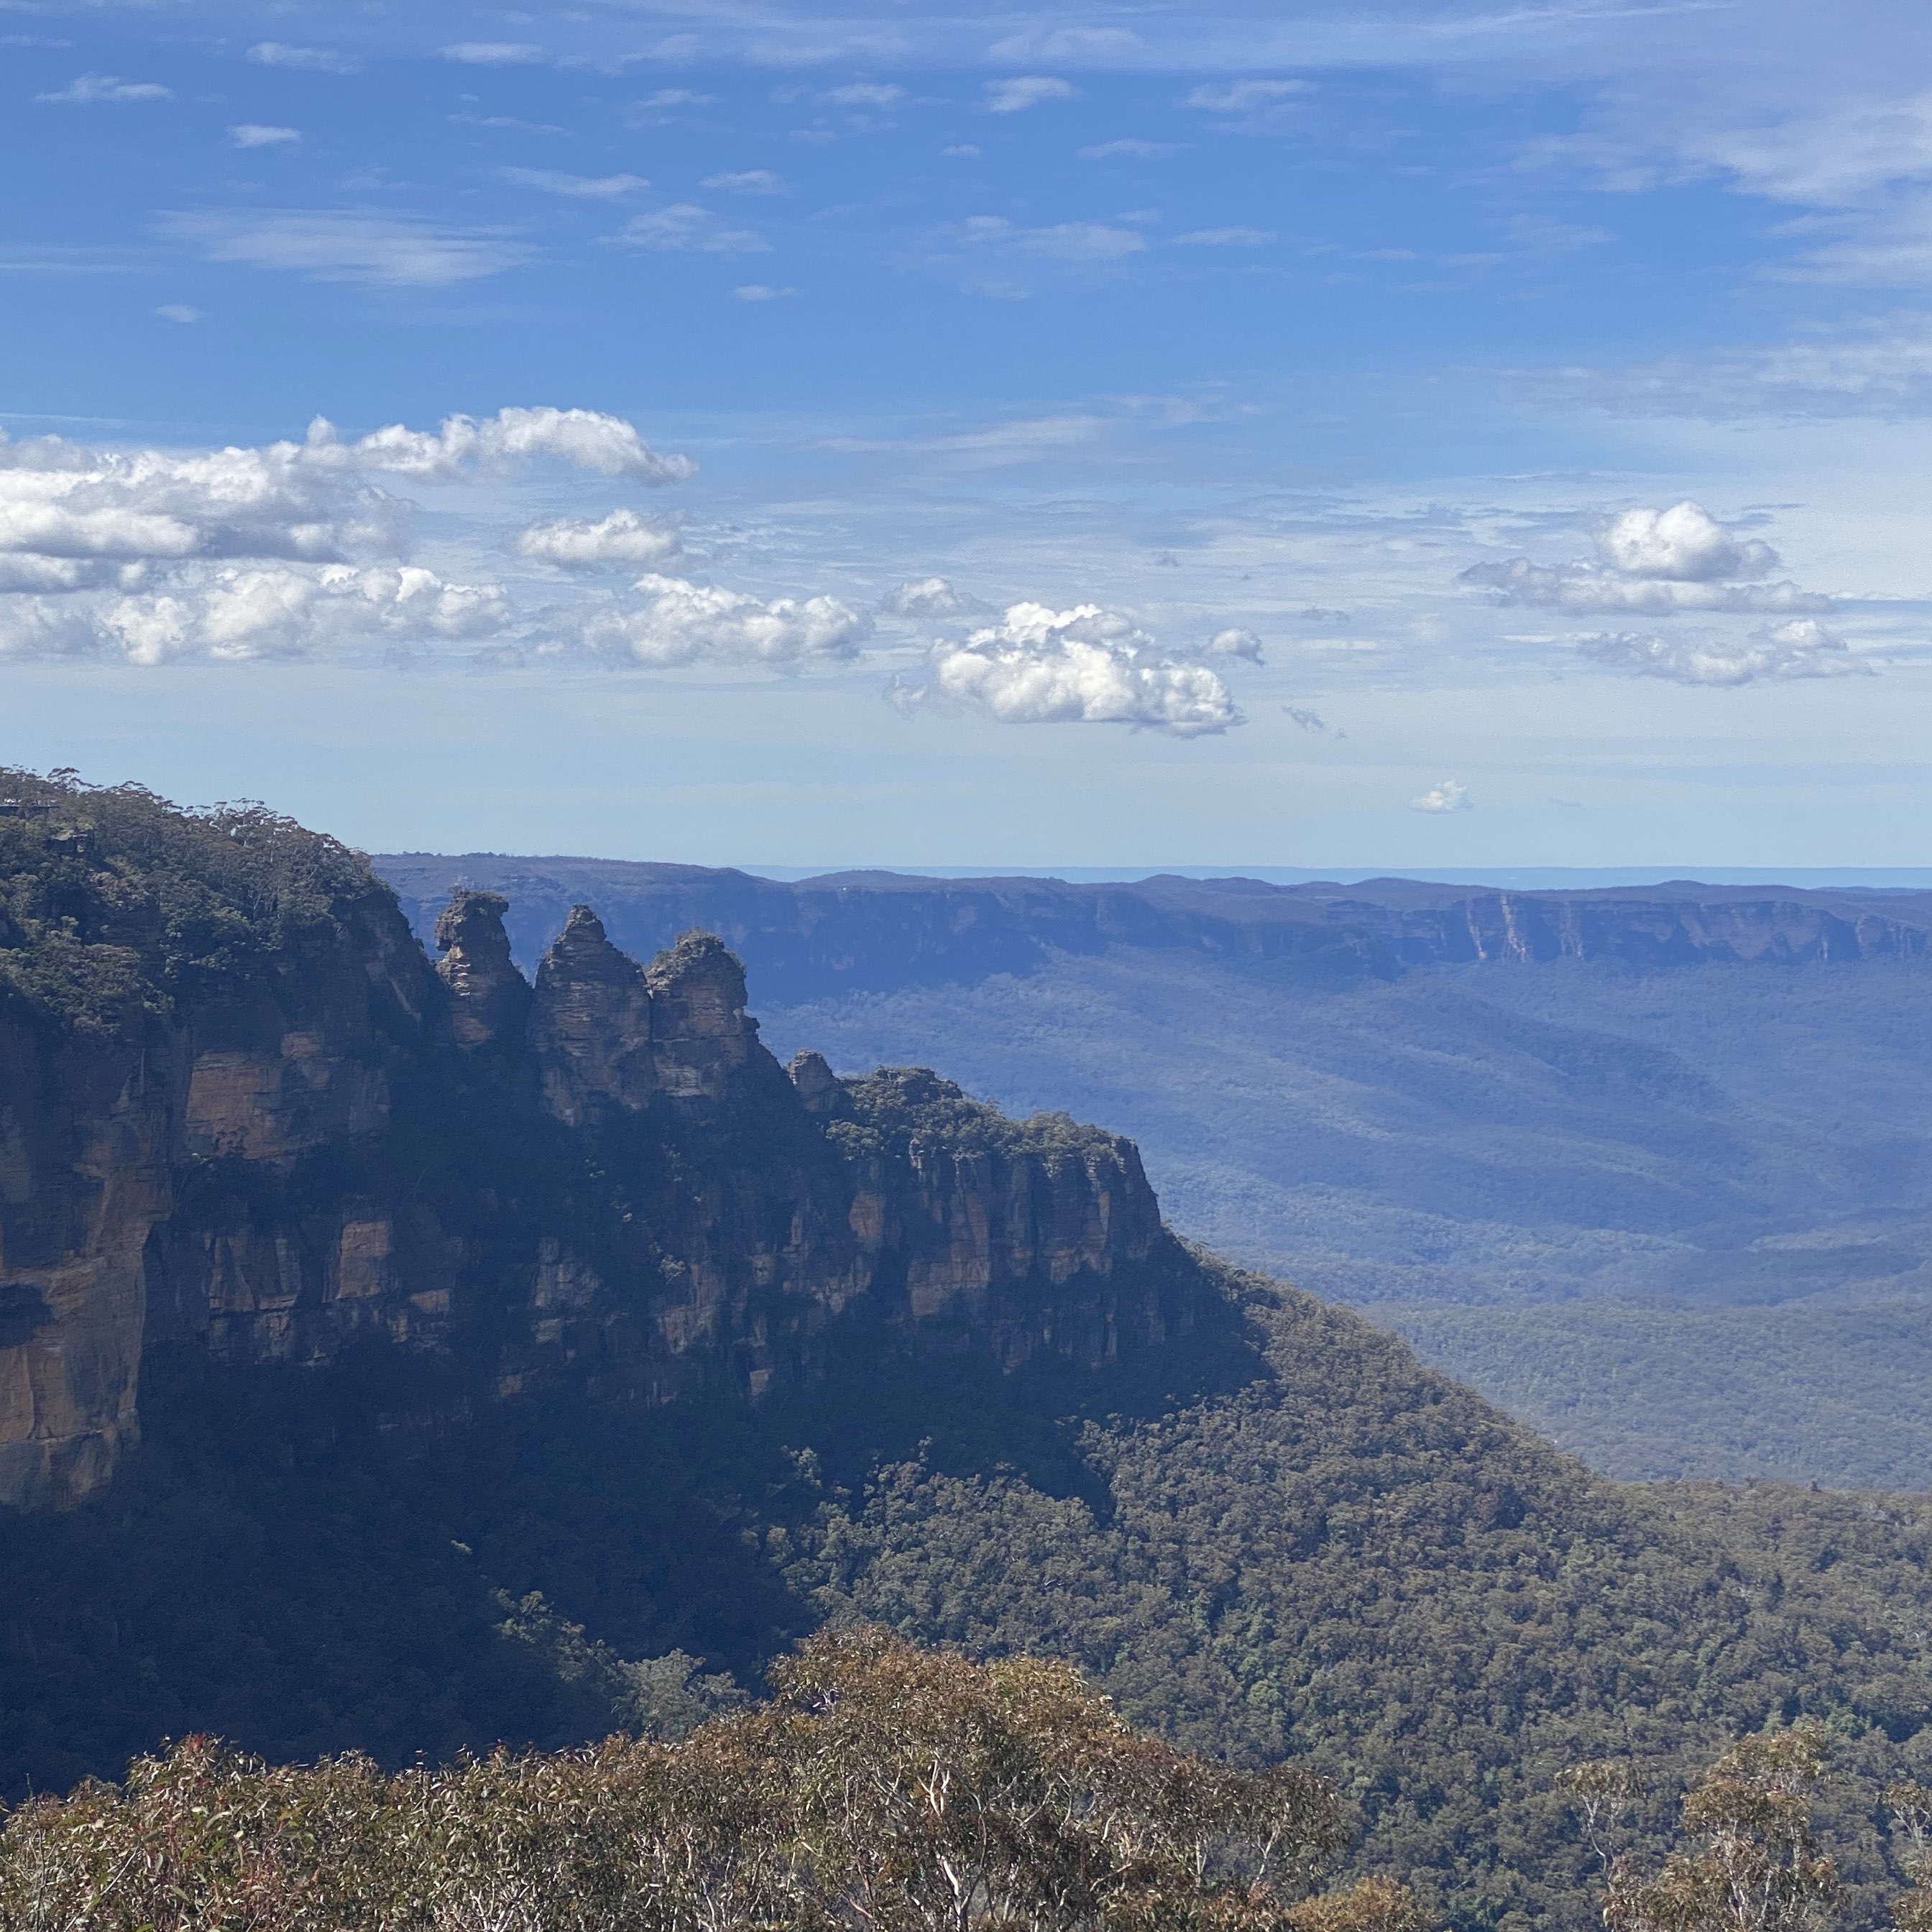 澳洲蓝山国家公园是到悉尼必去的景点 它称为蓝山因为在阳光照射下凸显蓝色的画面 它离悉尼只有大约2小时